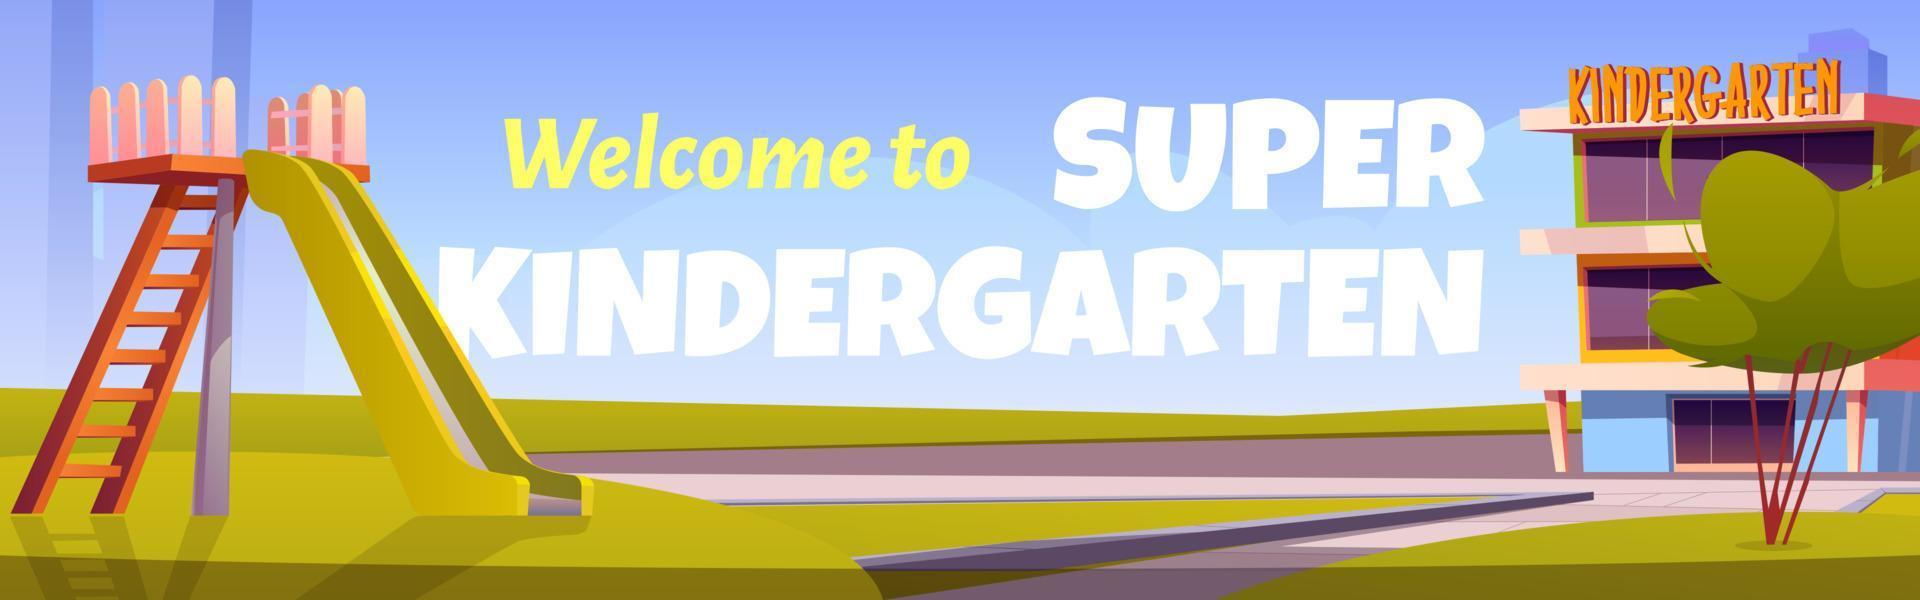 Willkommen zum Super-Kindergarten-Poster vektor